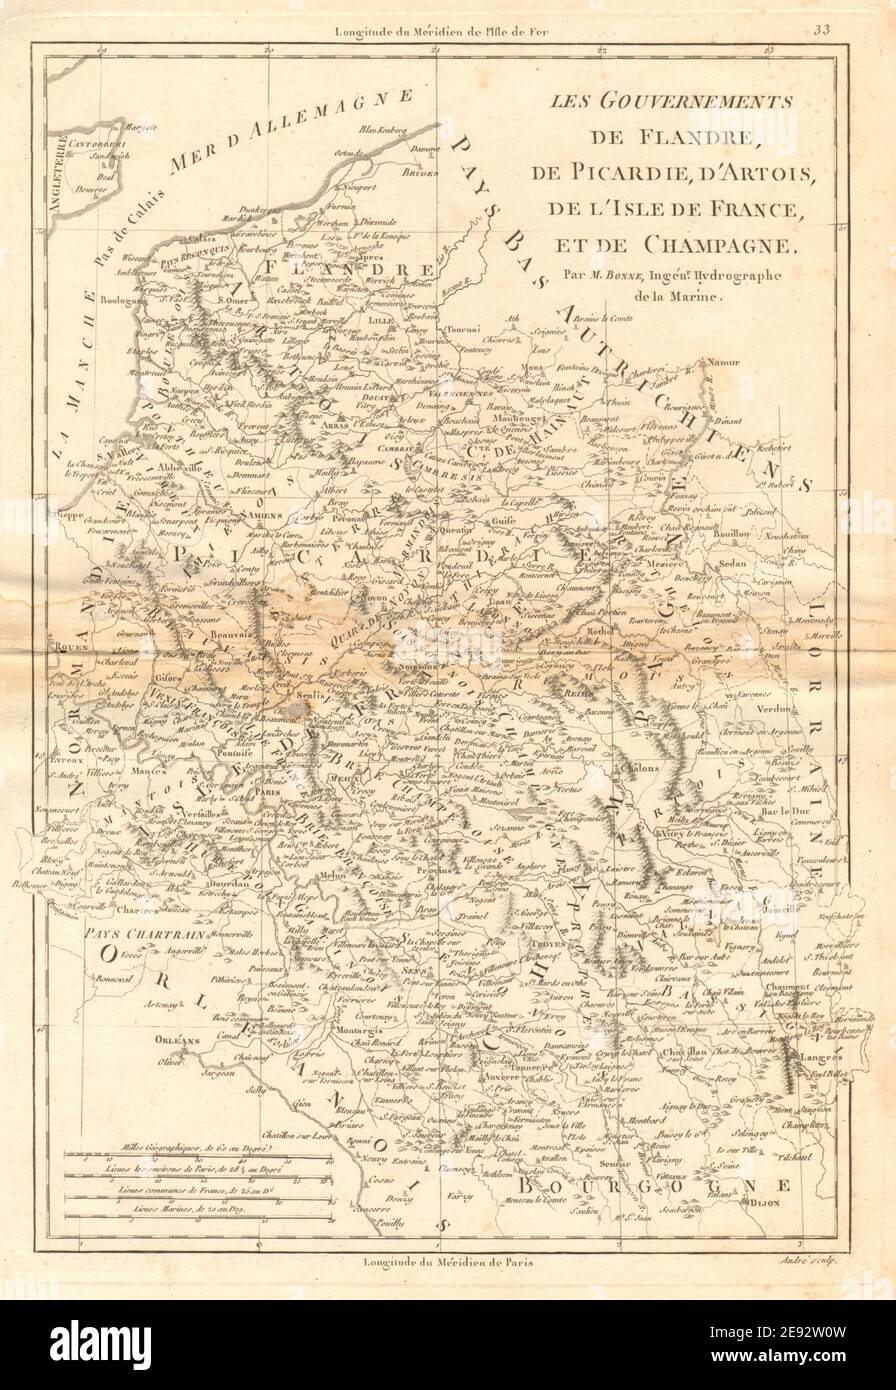 Flandre, Picardie, Artois, Ile de France et Champagne. Ne France. BONNE 1787 carte Banque D'Images